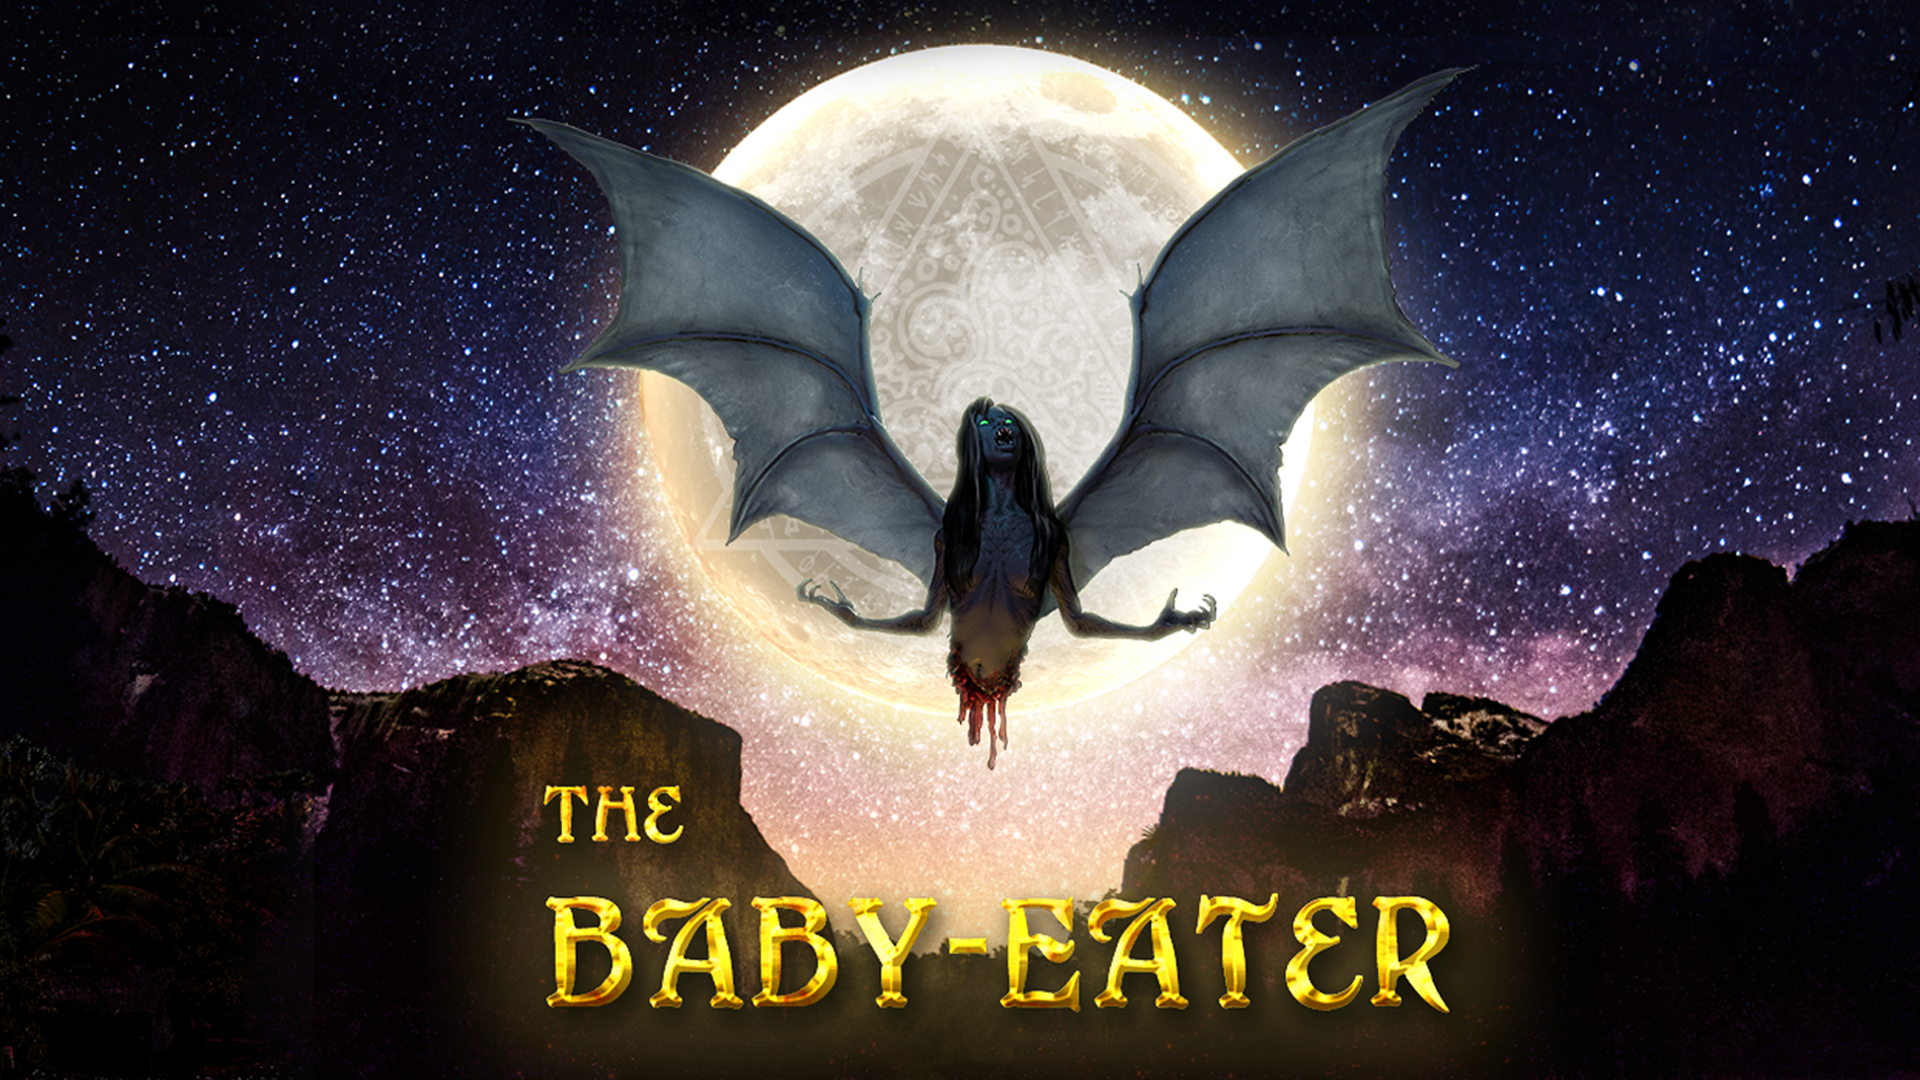 Load video: The award-winning horror novel The Baby-Eater